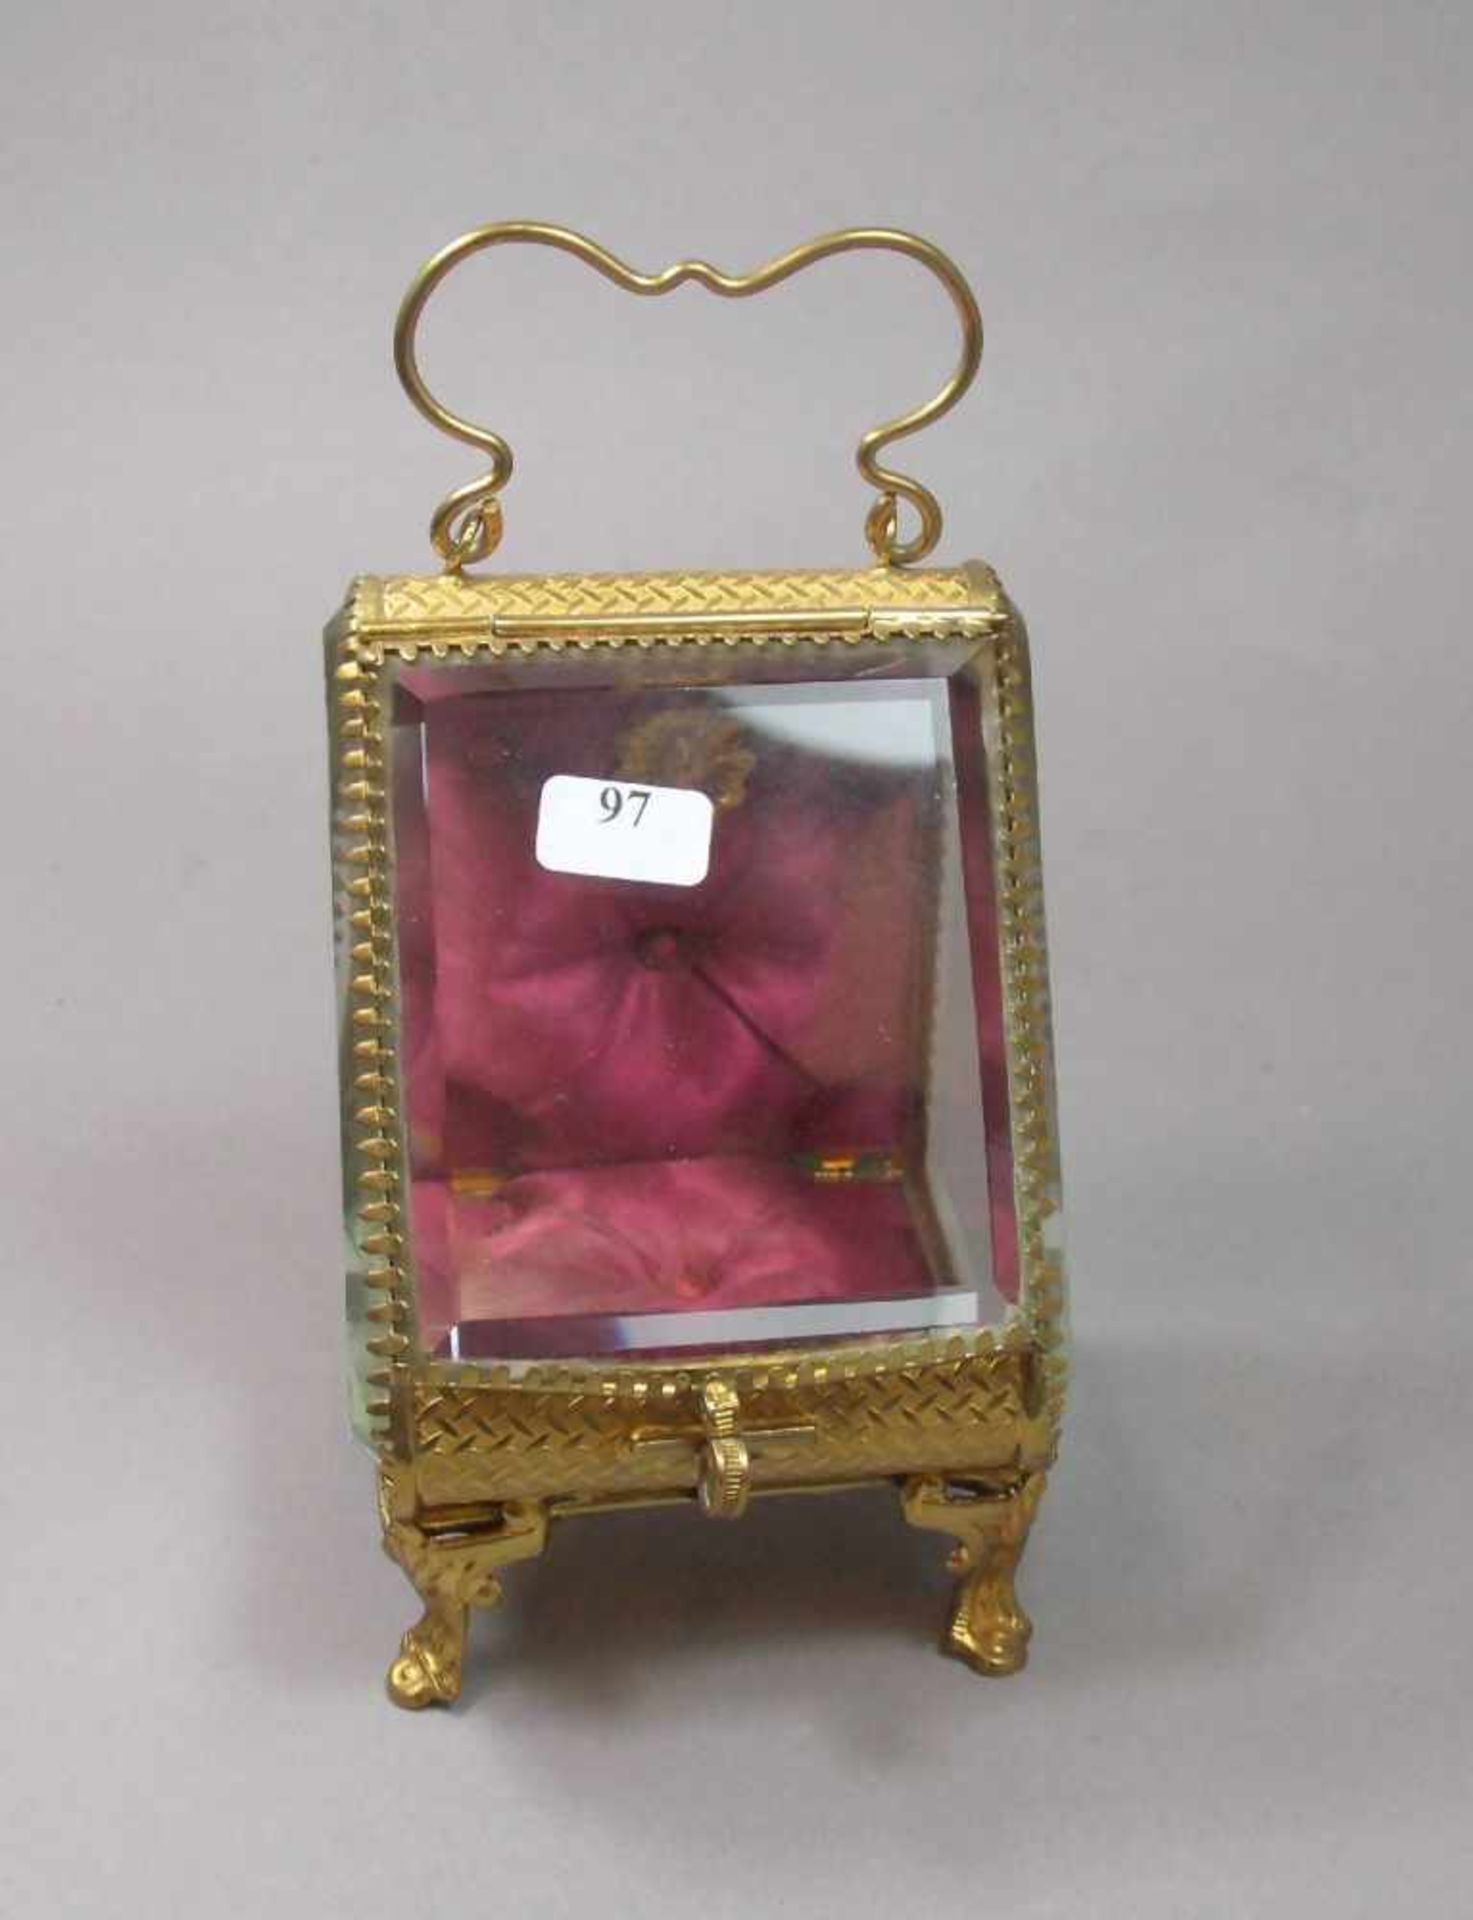 TASCHENUHRENHALTER / TASCHENUHRENSTÄNDER / pocket watch holder, um 1900, vergoldete